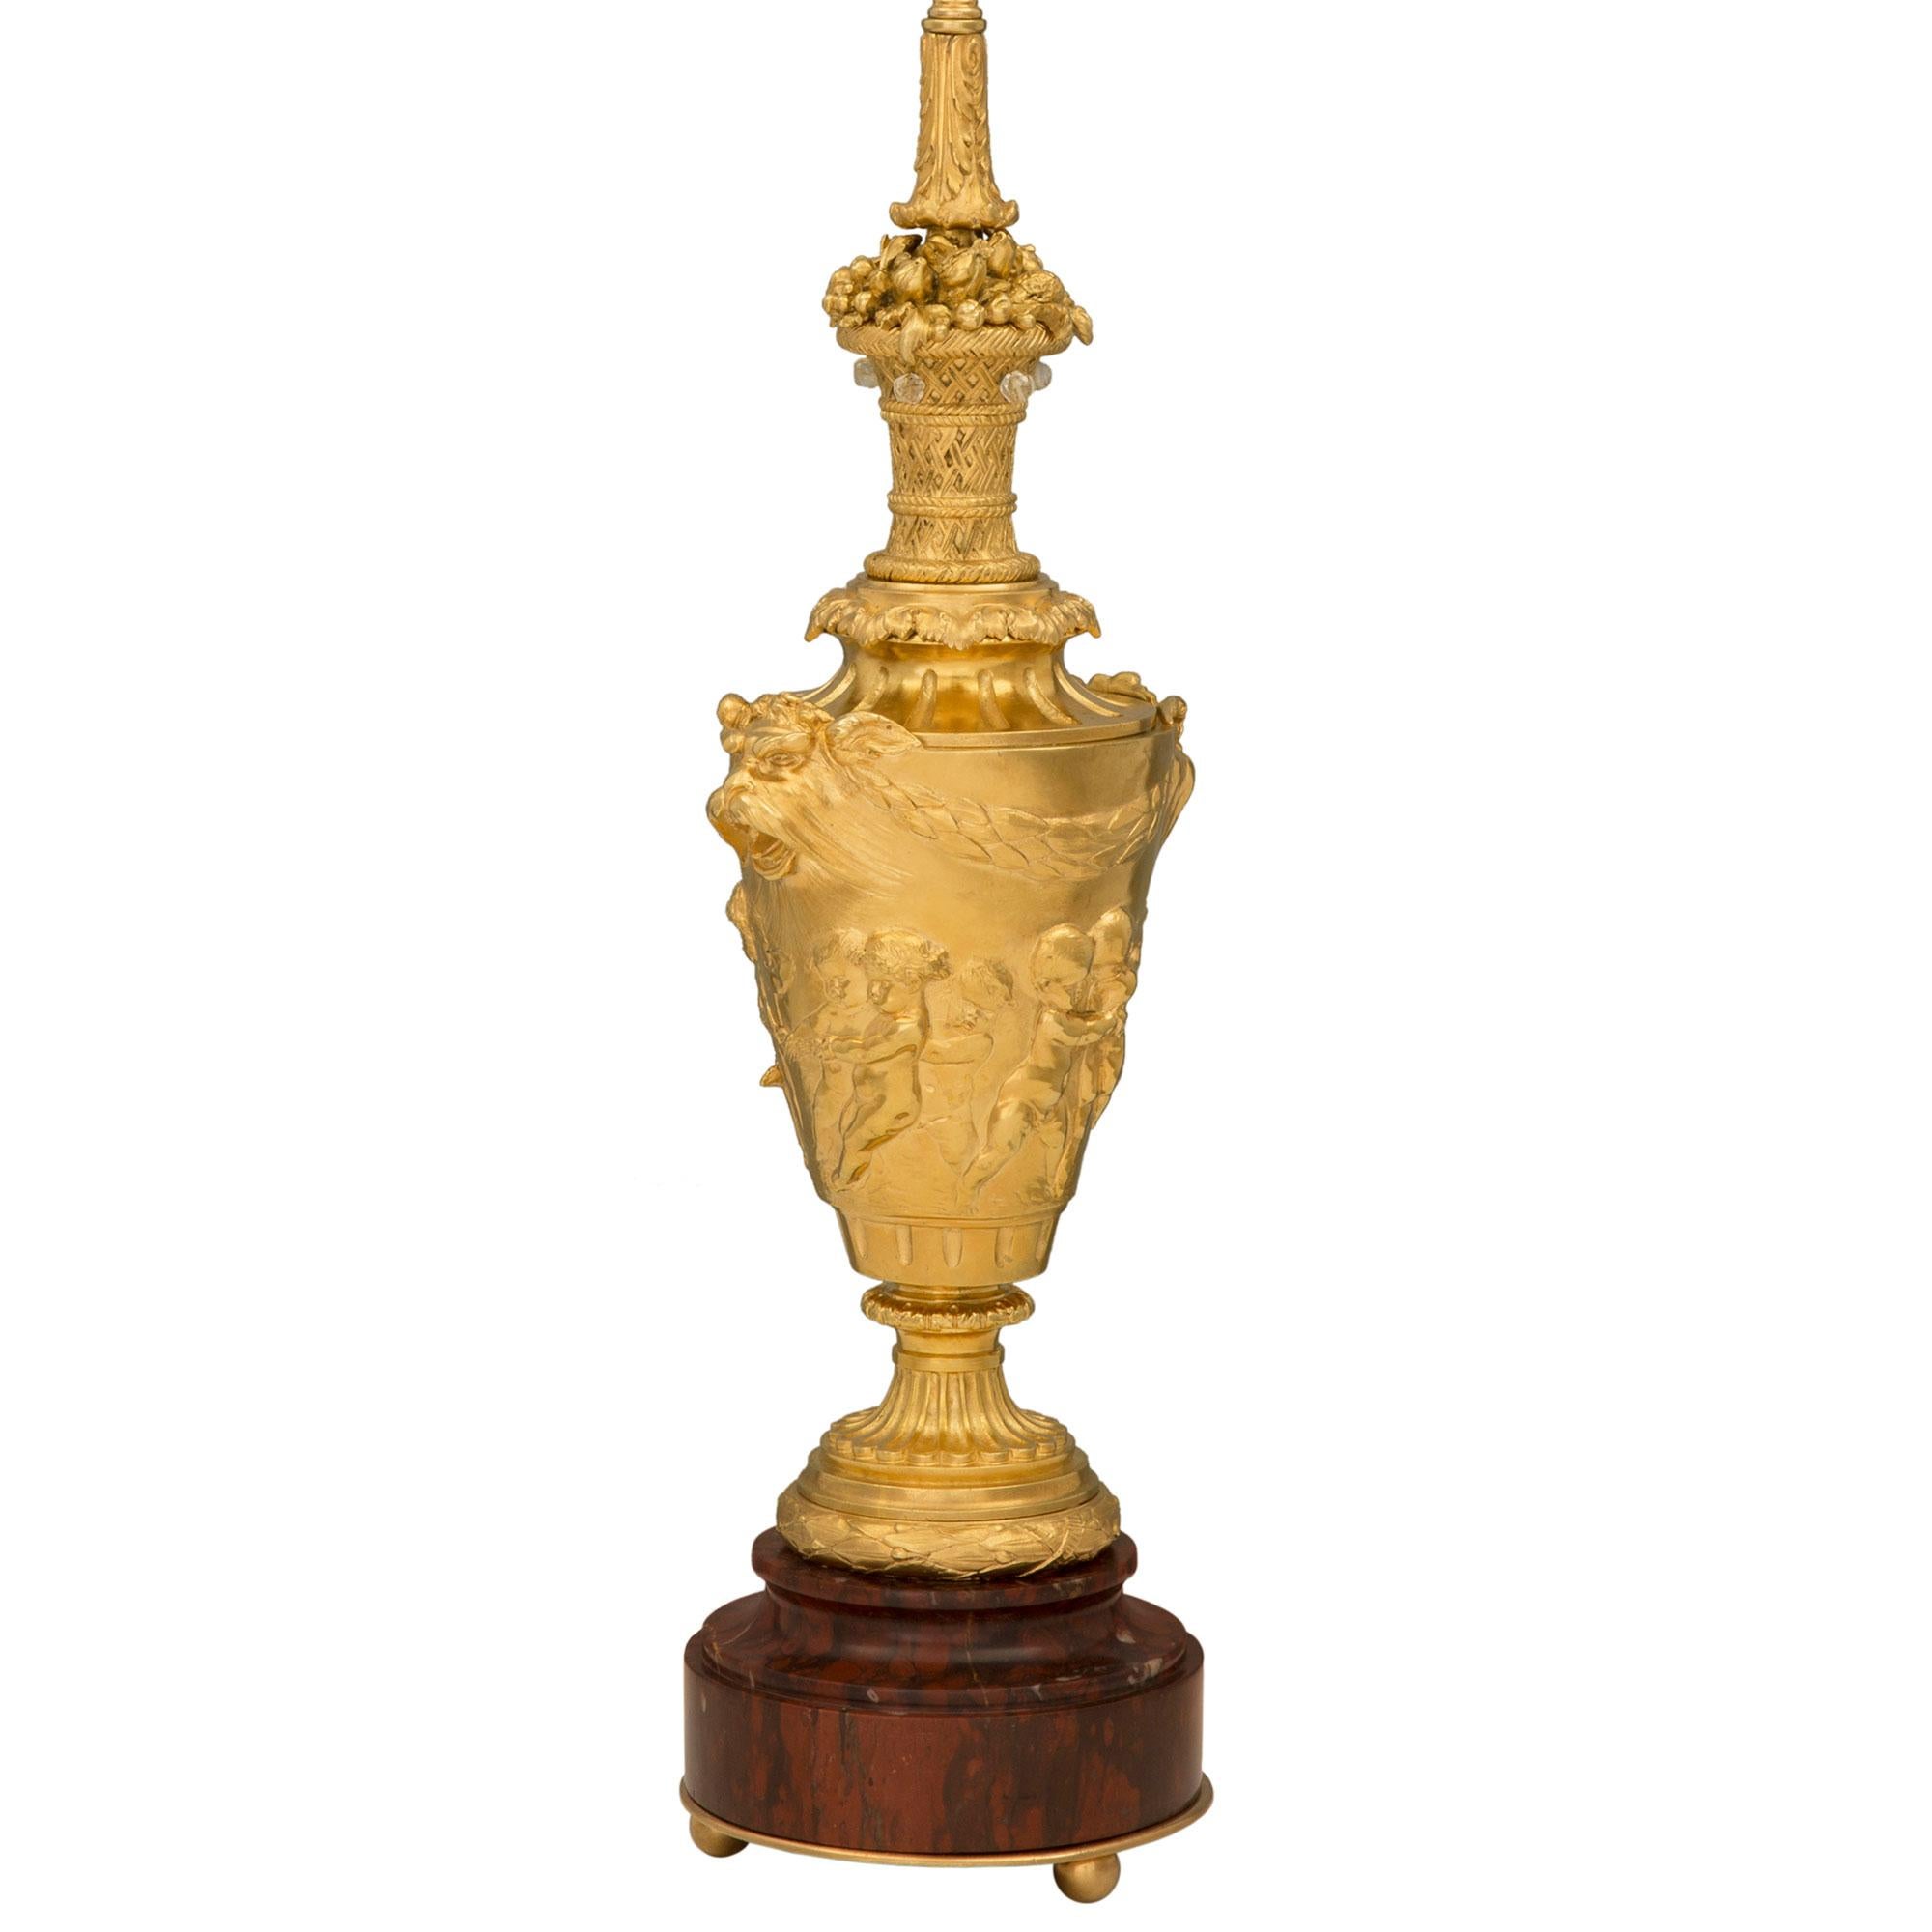 Paire de lampes en marbre Rouge Griotte et bronze doré de style Louis XVI du 19ème siècle, attribuée à Barbedienne et d'après un modèle de John Flaxman. Chaque lampe est surélevée par une impressionnante base circulaire en marbre Rouge Griotte avec